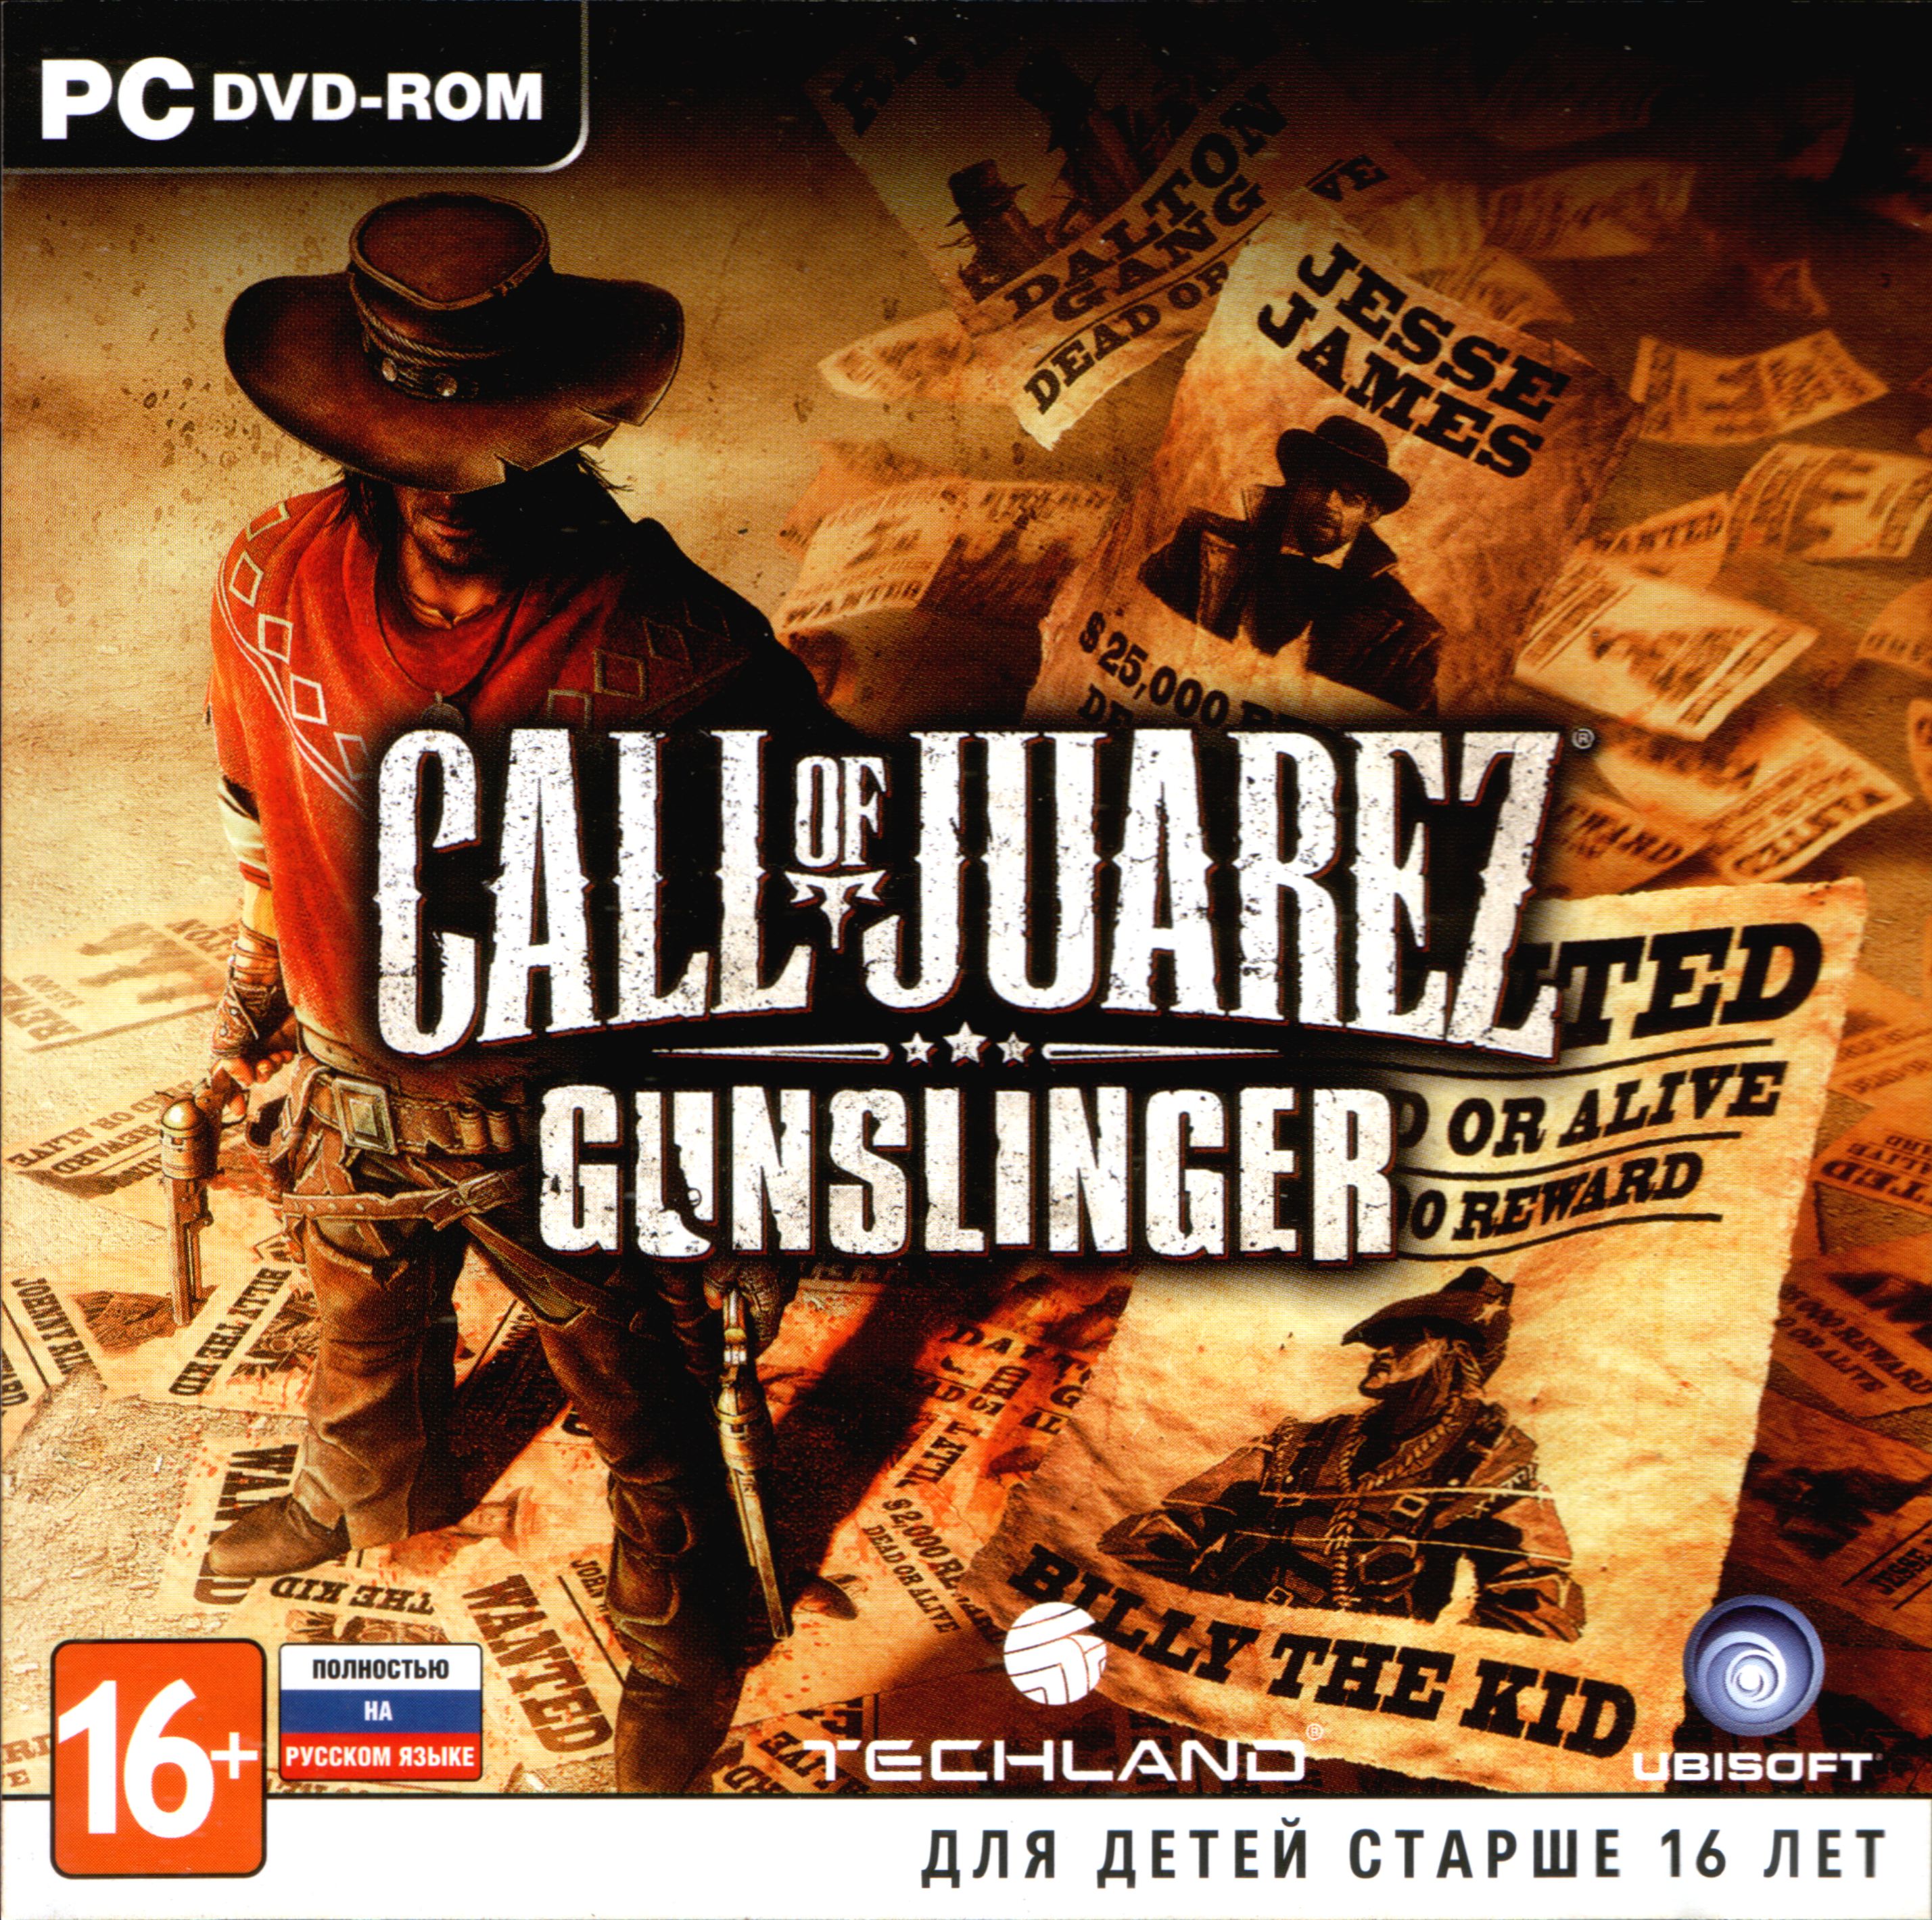 Игра call of juarez gunslinger. Зов Хуареса ганслингер. Call of Juarez Gunslinger обложка. Call of Juarez: Gunslinger (2013). Call of Juarez Gunslinger 2.